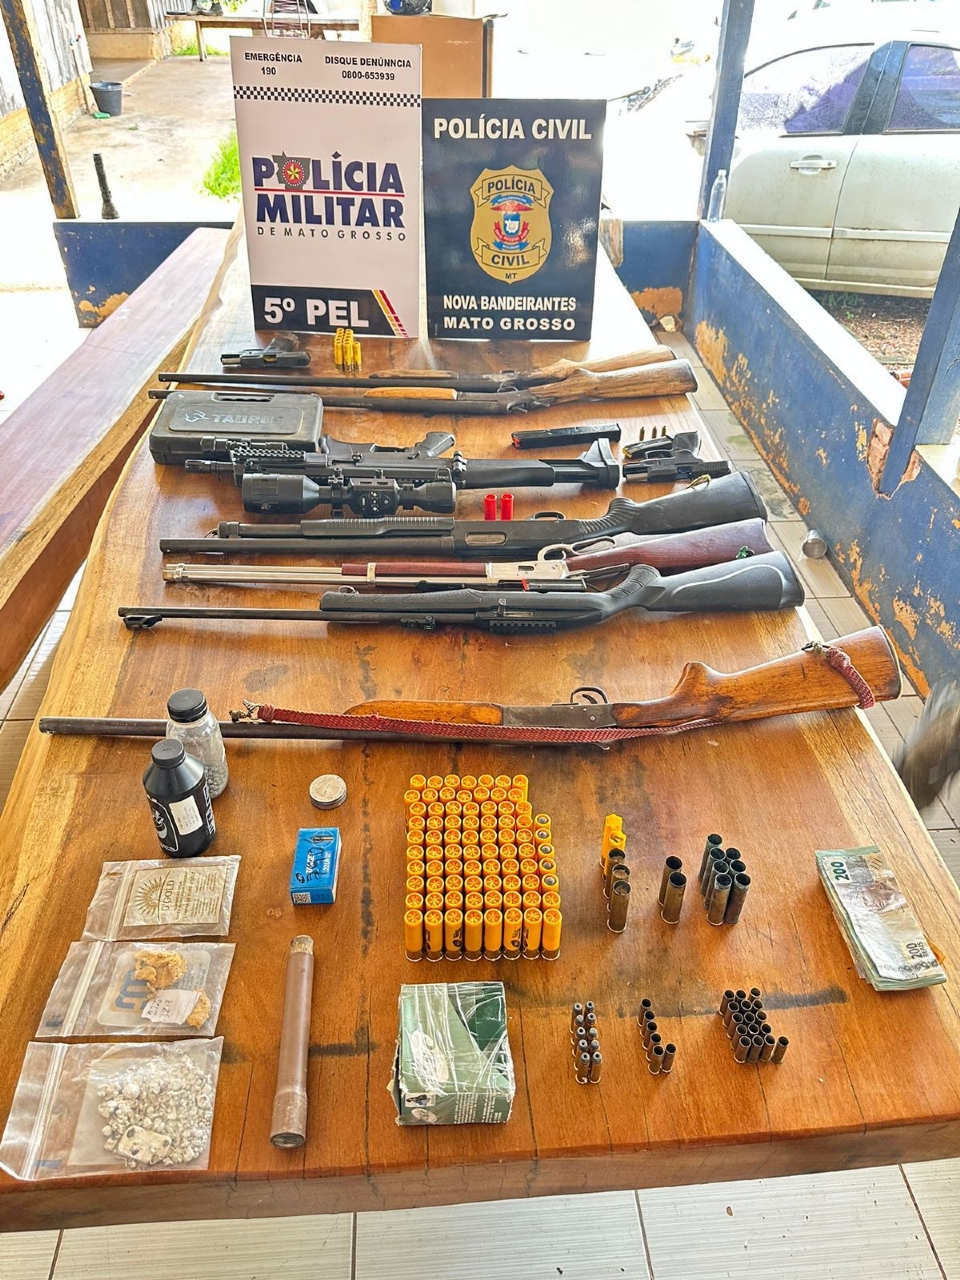 Polcia deflagra operao e prende 5 em garimpo; armas e ouro sem origem legal so apreendidos